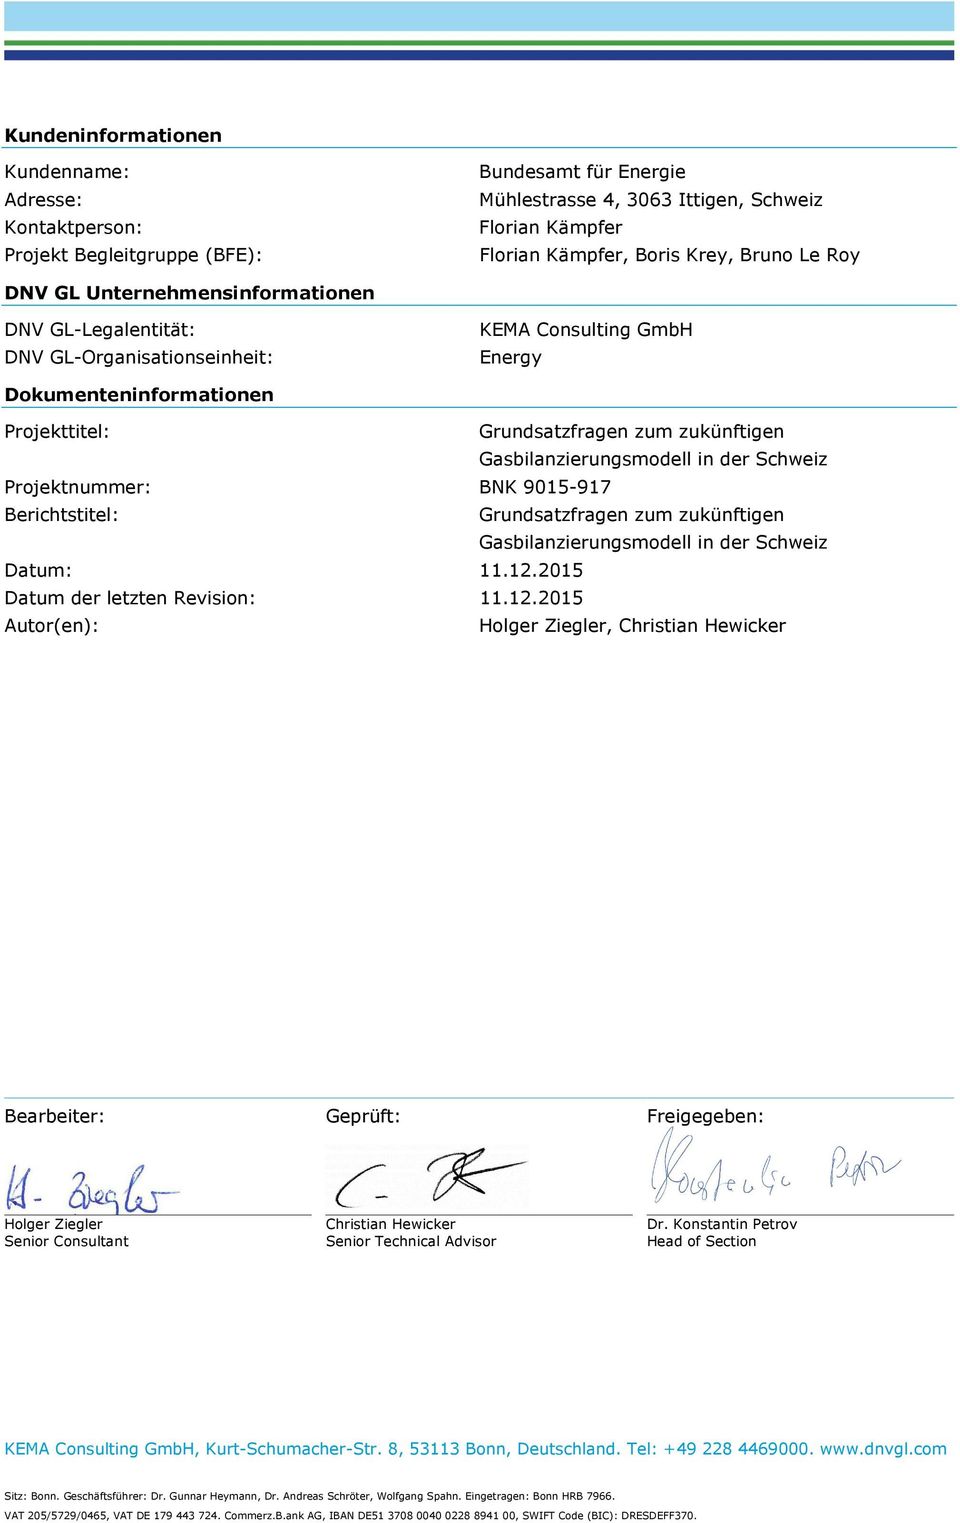 Gasbilanzierungsmodell in der Schweiz Projektnummer: BNK 9015-917 Berichtstitel: Grundsatzfragen zum zukünftigen Gasbilanzierungsmodell in der Schweiz Datum: 11.12.2015 Datum der letzten Revision: 11.